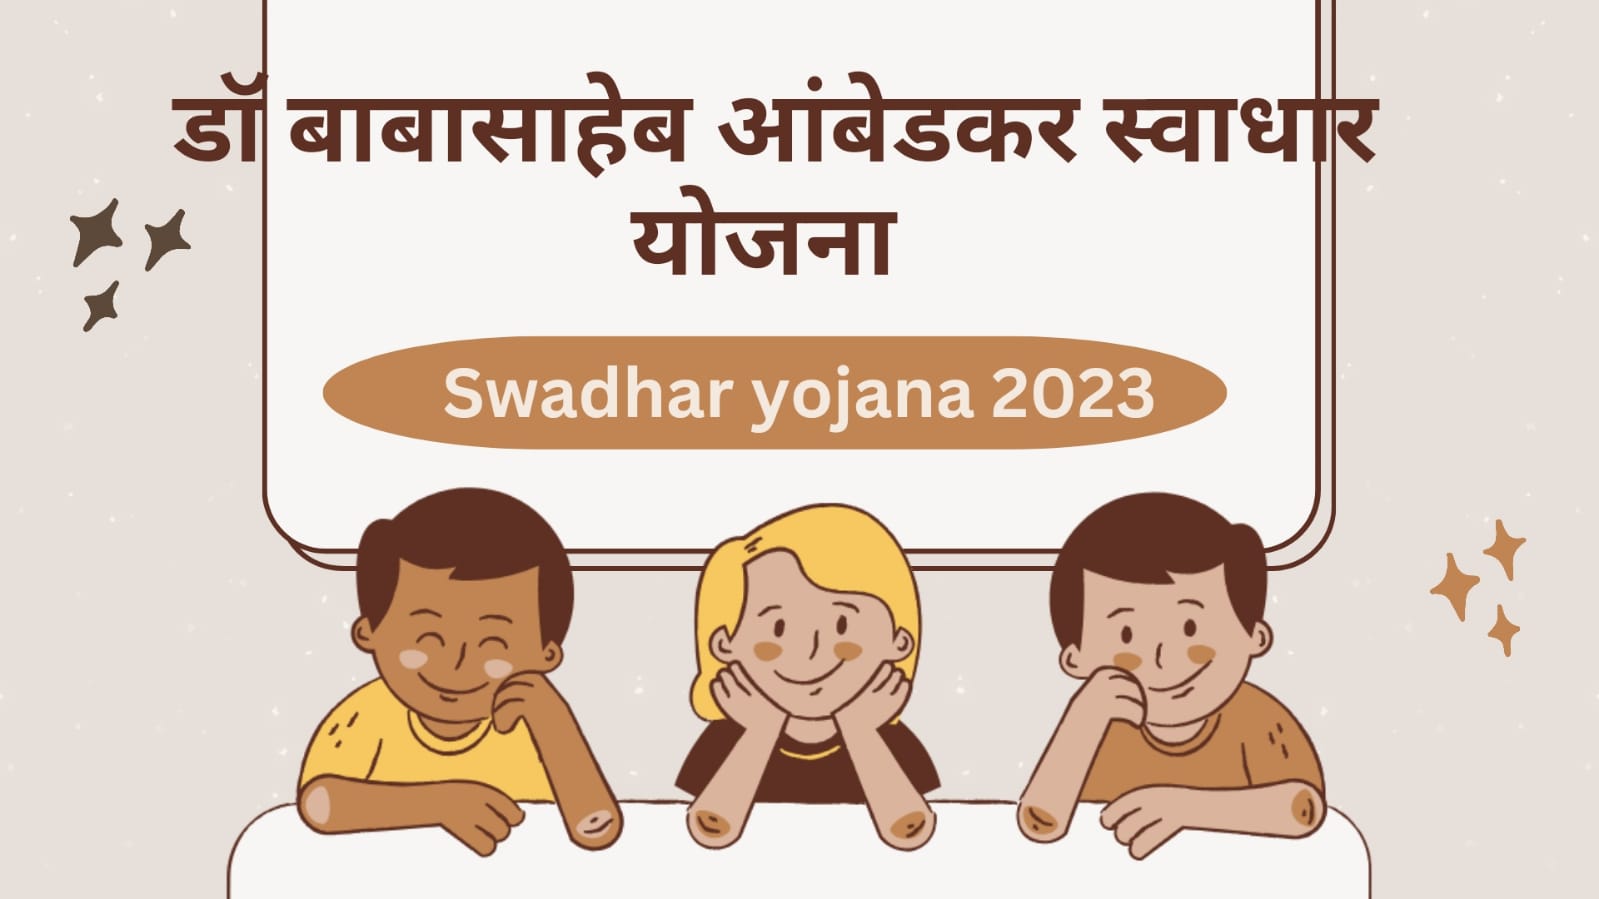 स्वाधार योजना 2023 | Swadhar Yojana 2023